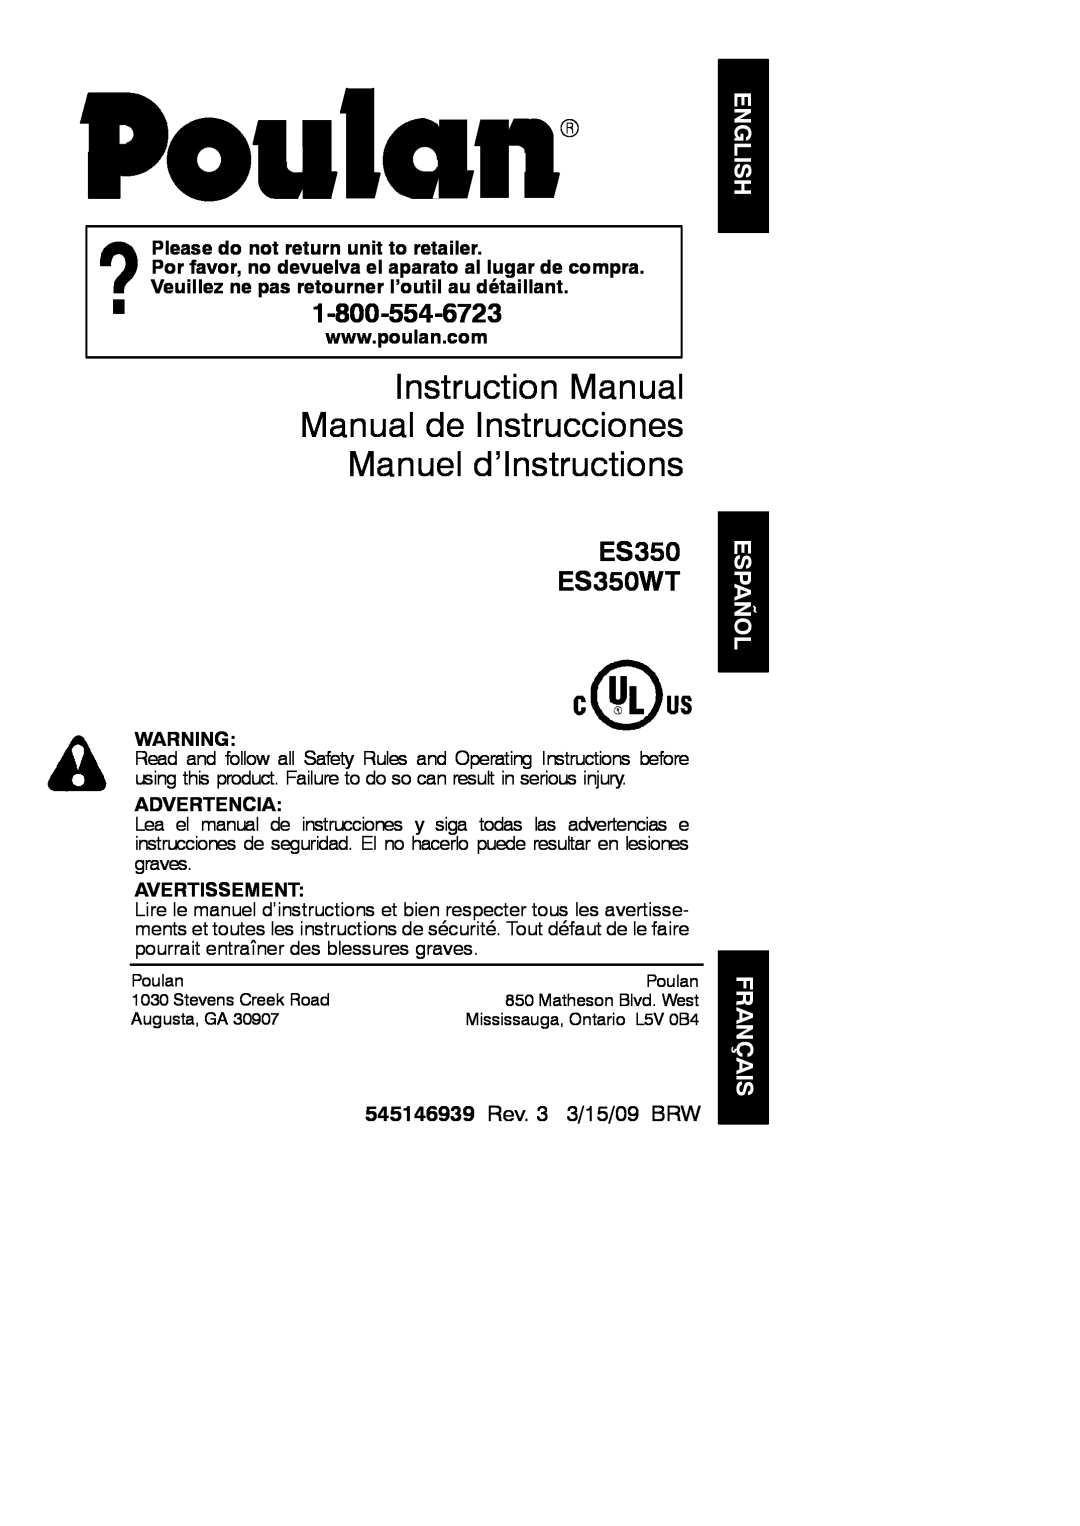 Poulan instruction manual Español, Français, Manuel d’Instructions, ES350 ES350WT, 545146939 Rev. 3 3/15/09 BRW 